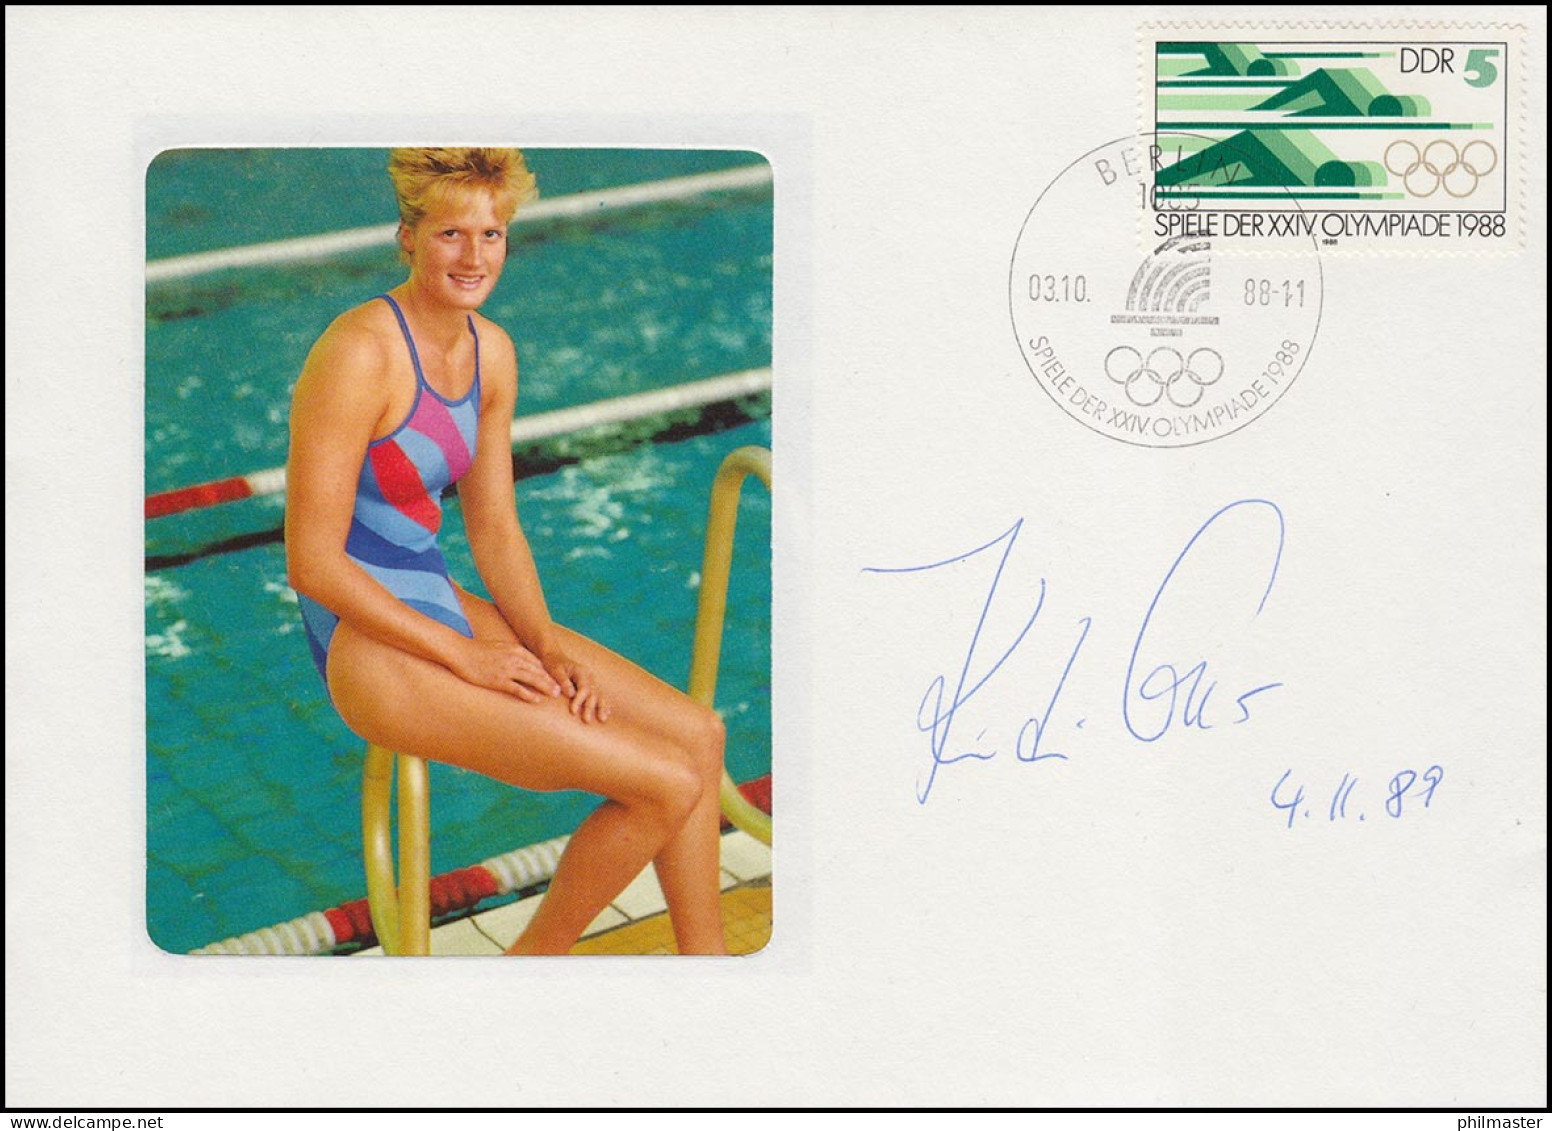 Autogramm Kristin Otto Auf Passendem Schmuck-Brief SSt Berlin Olympia 3.10.88 - Swimming